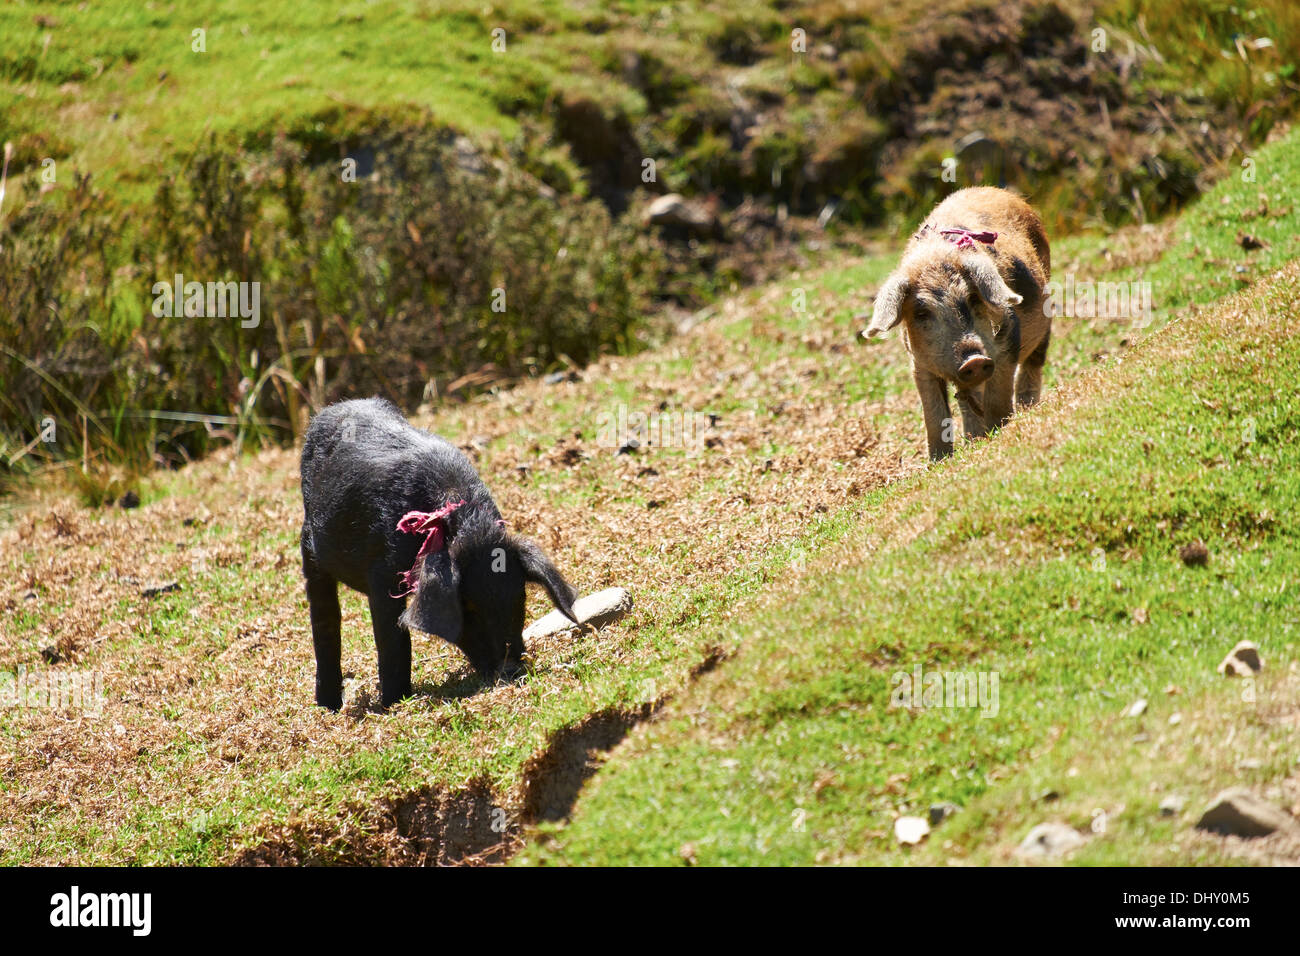 Suini su terreno coltivato nelle Ande peruviane, Sud America. Foto Stock